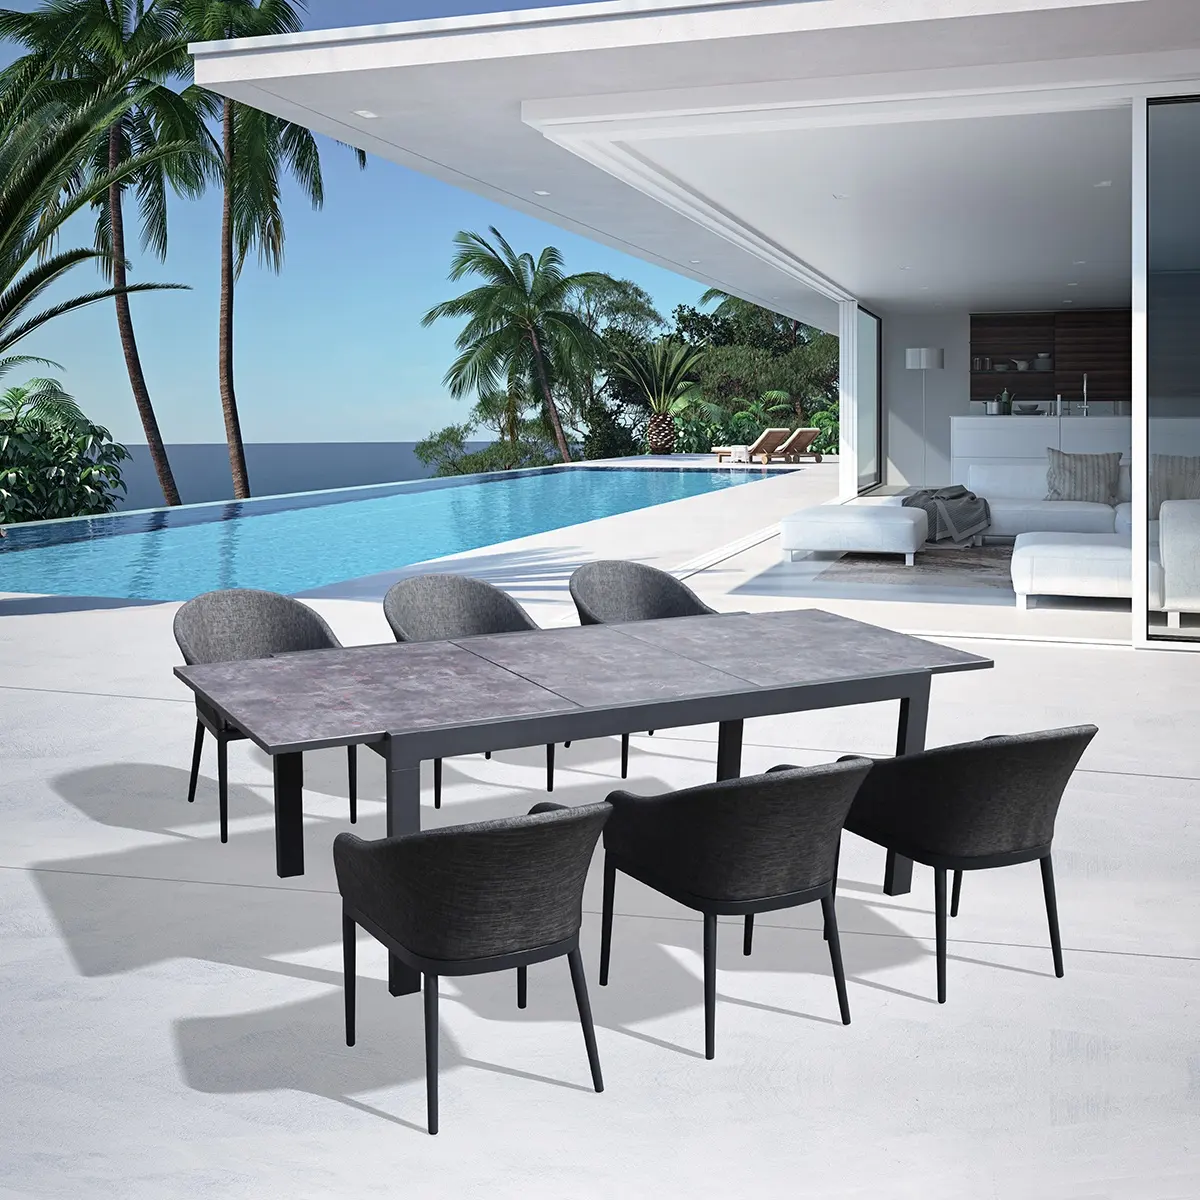 Venda quente conjuntos de mesa para Móveis de Jardim ao ar livre Mobiliário de Alumínio Que Se Estende